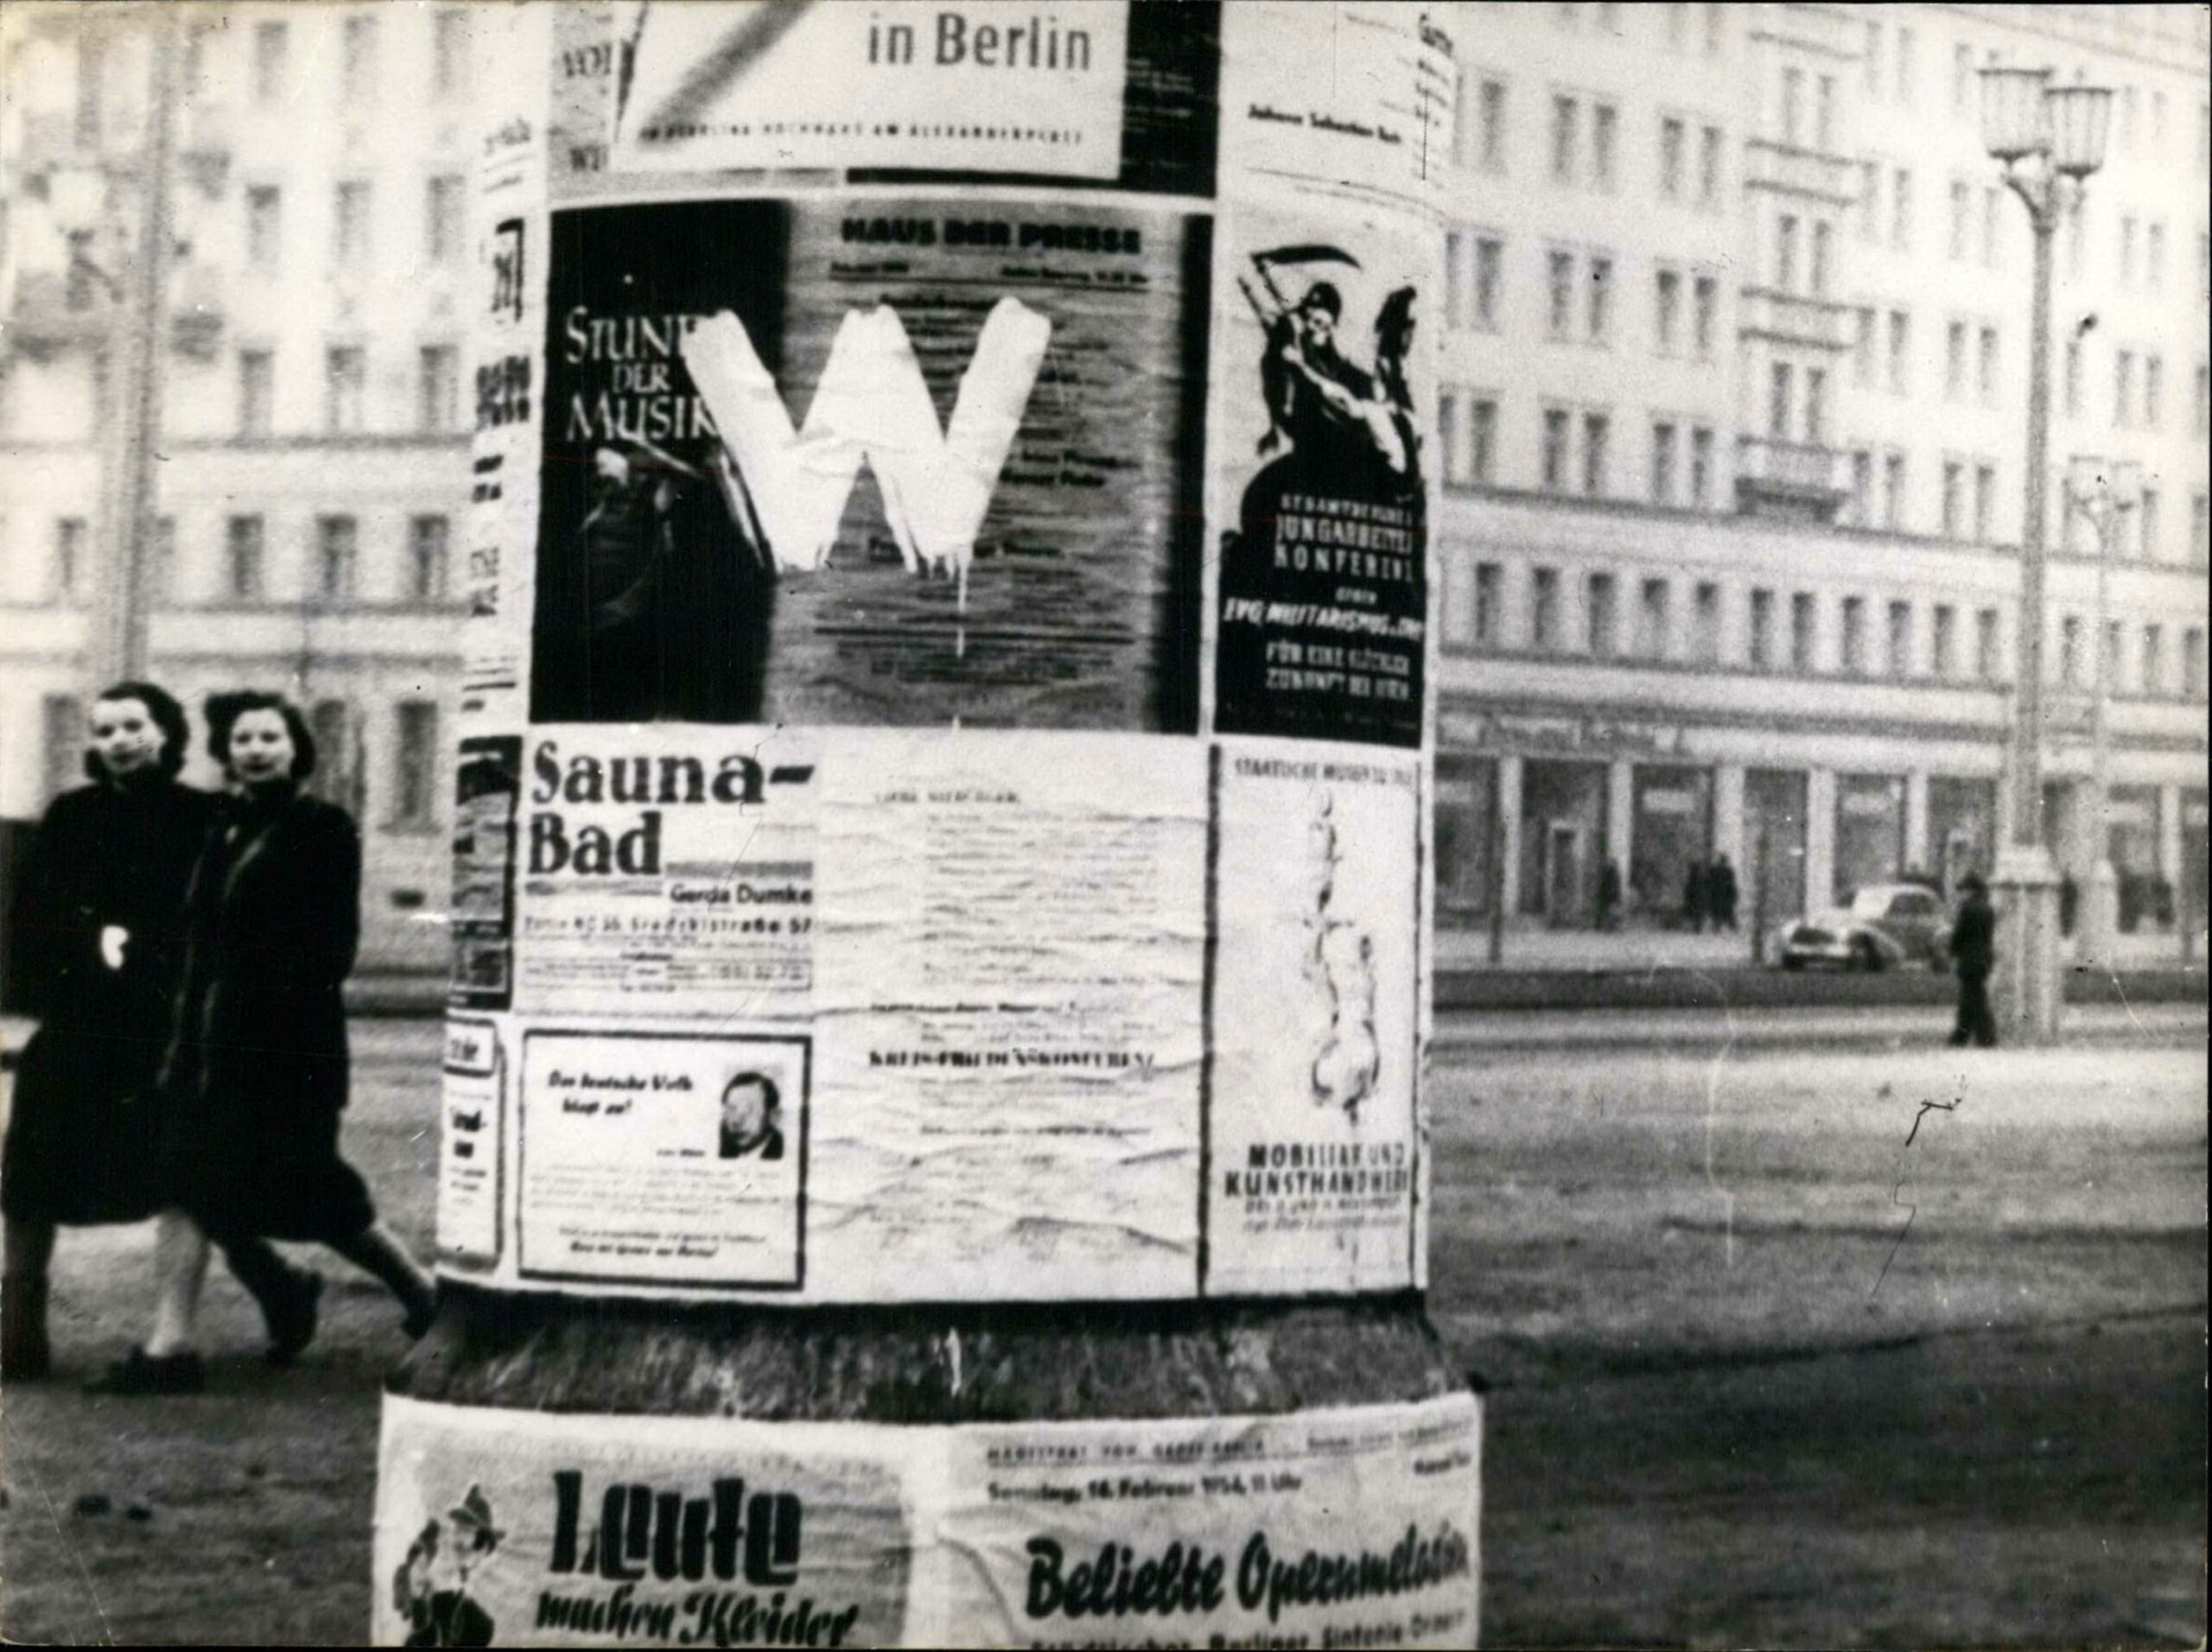 Berlin 1954: Das "W" als Zeichen für die Forderung nach freien Wahlen in der DDR, Mai 1954. Foto: Imago/Zuma/Keystone